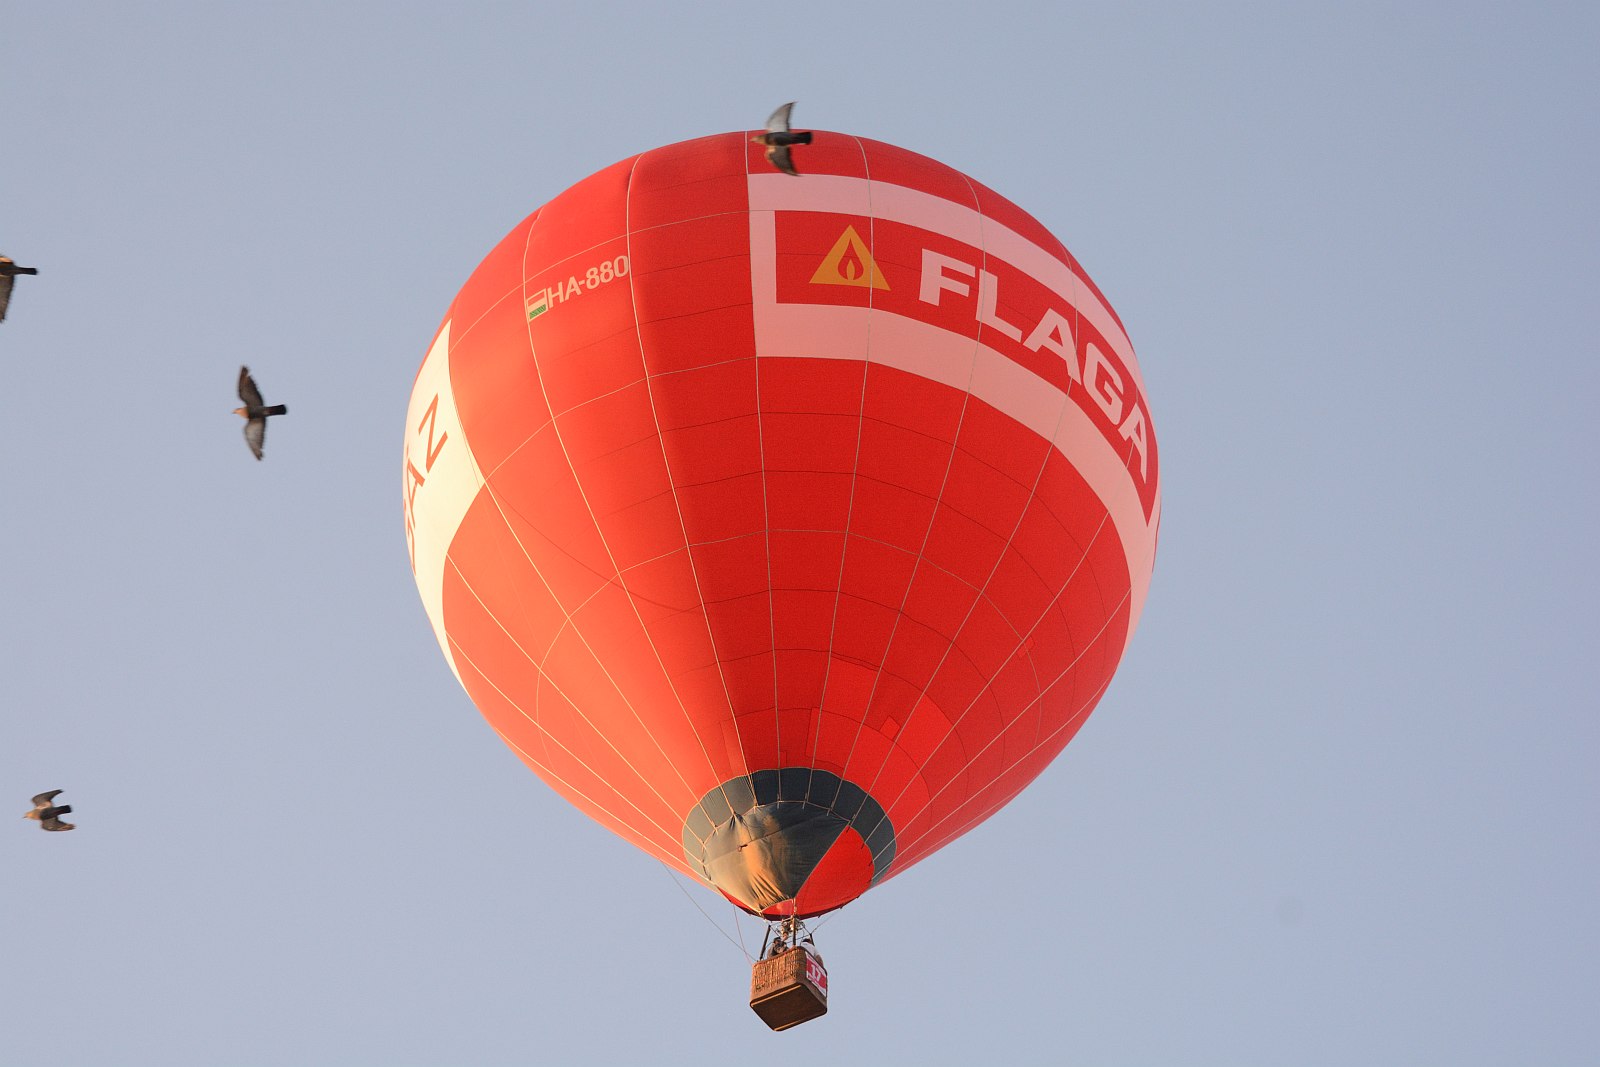 Pompás légi látványosságok - idén is átrepülnek Székesfehérvár fölött a hőlégballonok